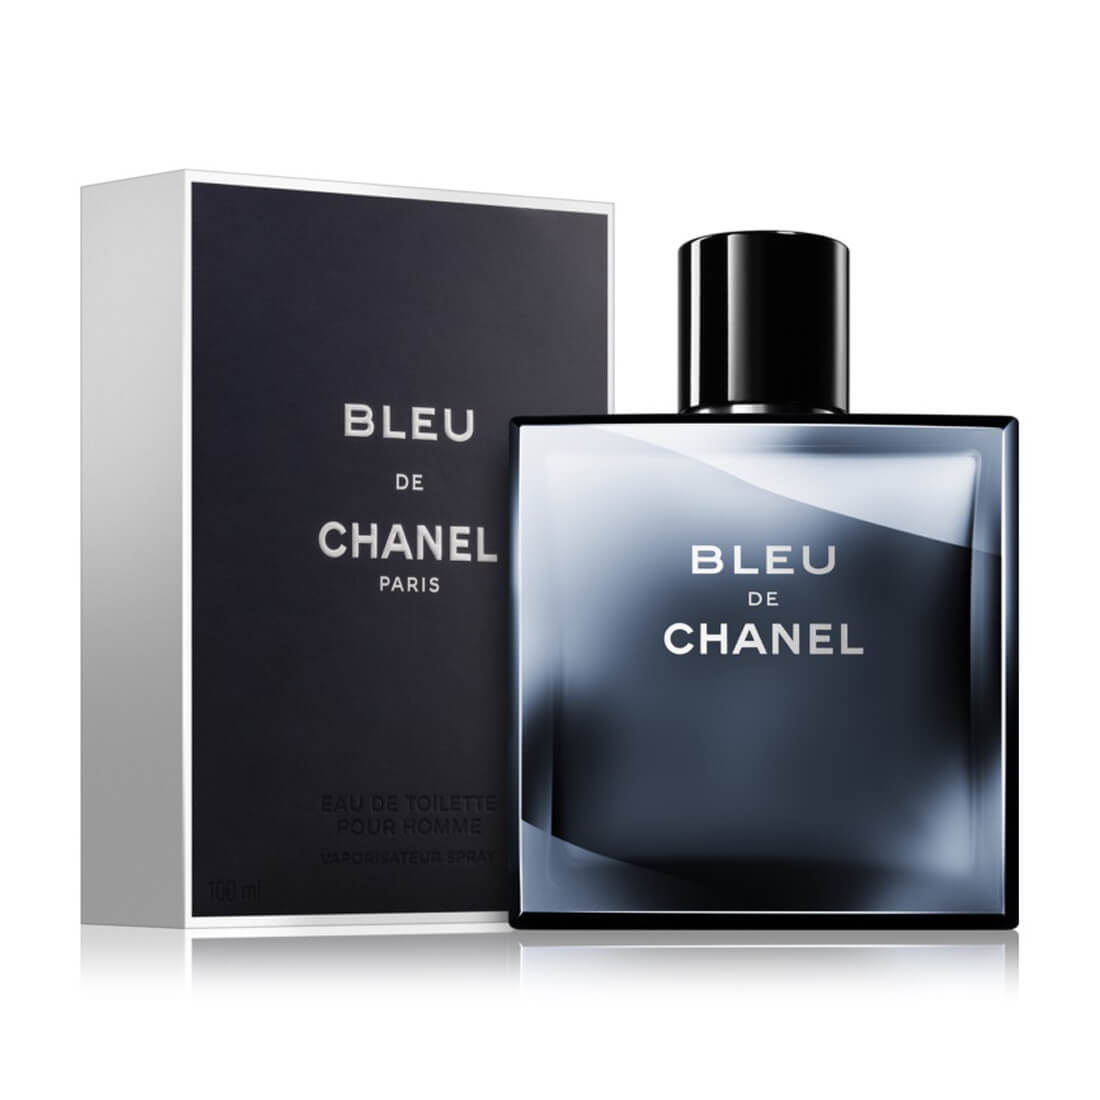 What Timothée Chalamet at Chanel signals about men's beauty